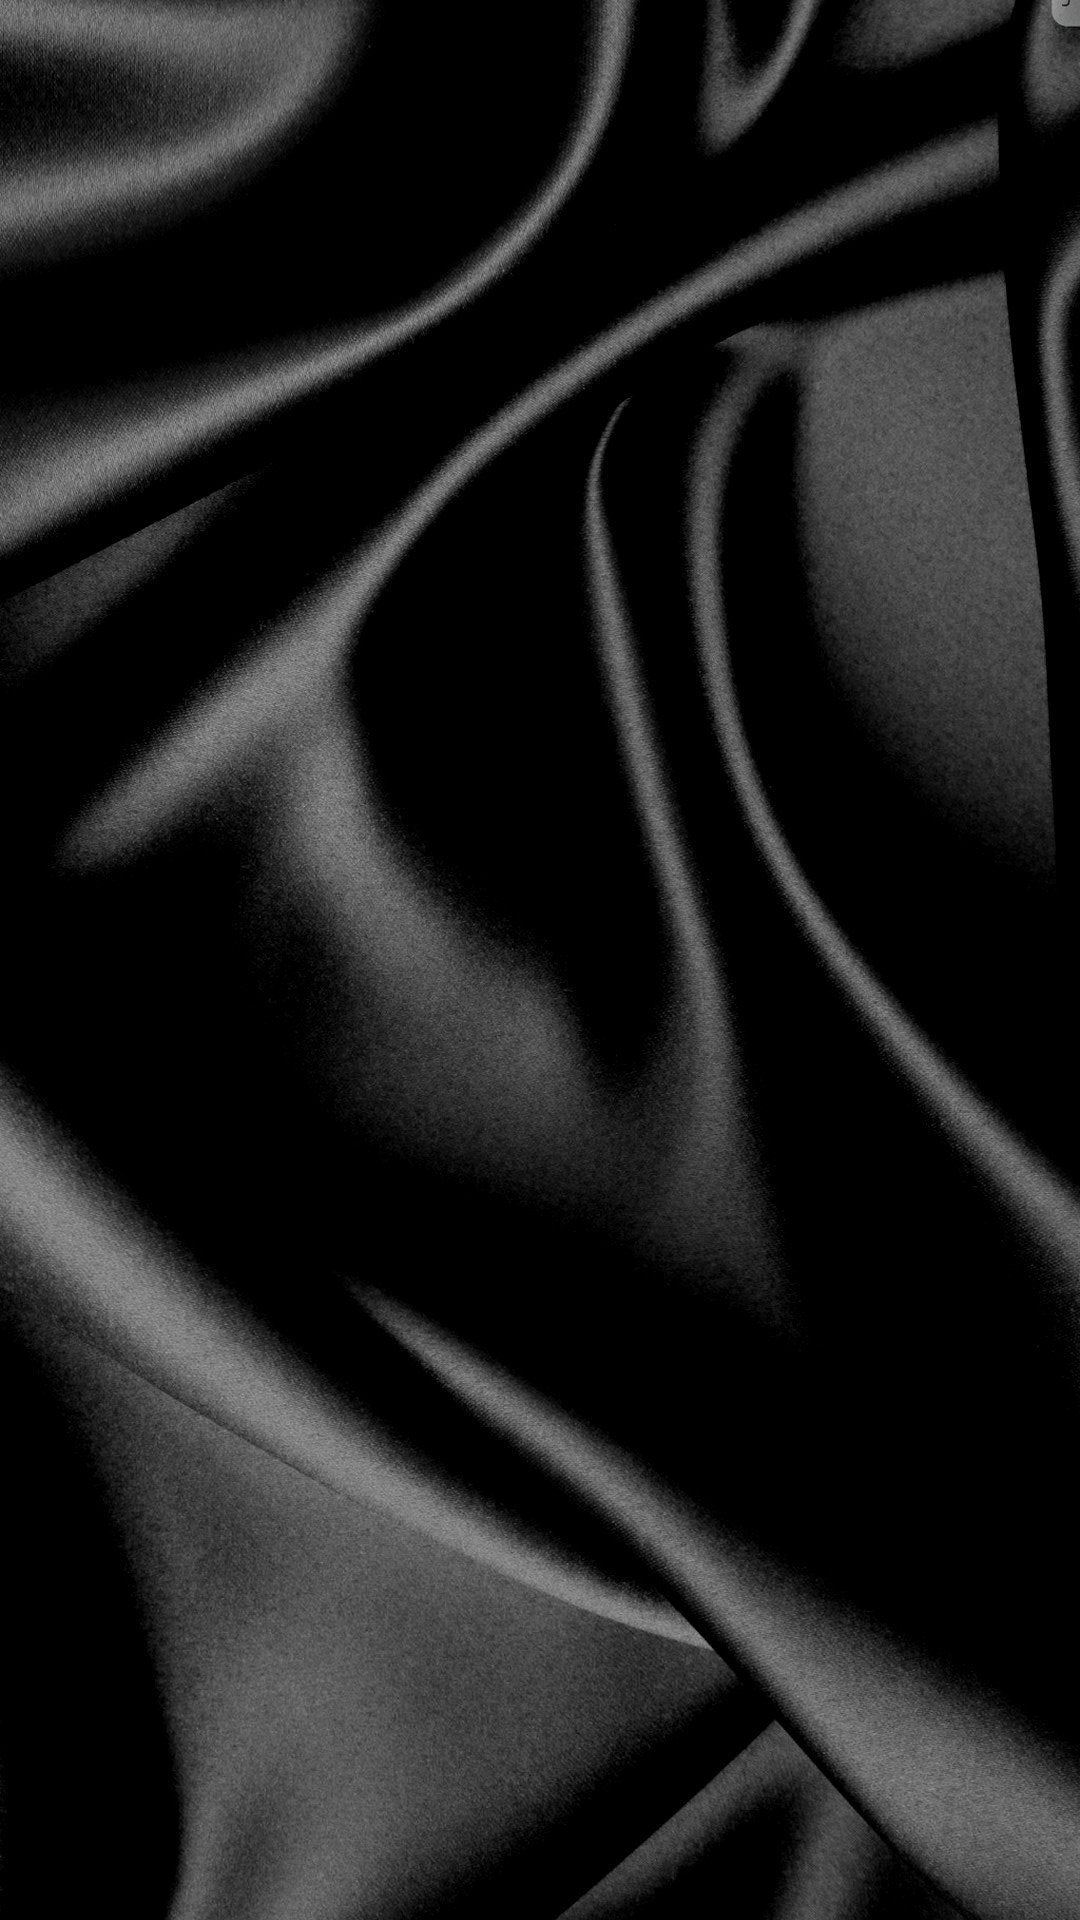 Vải lụa đen là lựa chọn hoàn hảo cho bất kì thiết kế hay trang phục nào, và khi sử dụng cho nền hình nền, chúng sẽ đem lại một vẻ đẹp độc đáo với cảm giác gợi cảm và cổ điển. Tìm hiểu ngay với những hình ảnh vải lụa đen làm hình nền để biết thêm về sự kết hợp độc đáo này để tạo ra một thiết kế thời trang đẳng cấp.